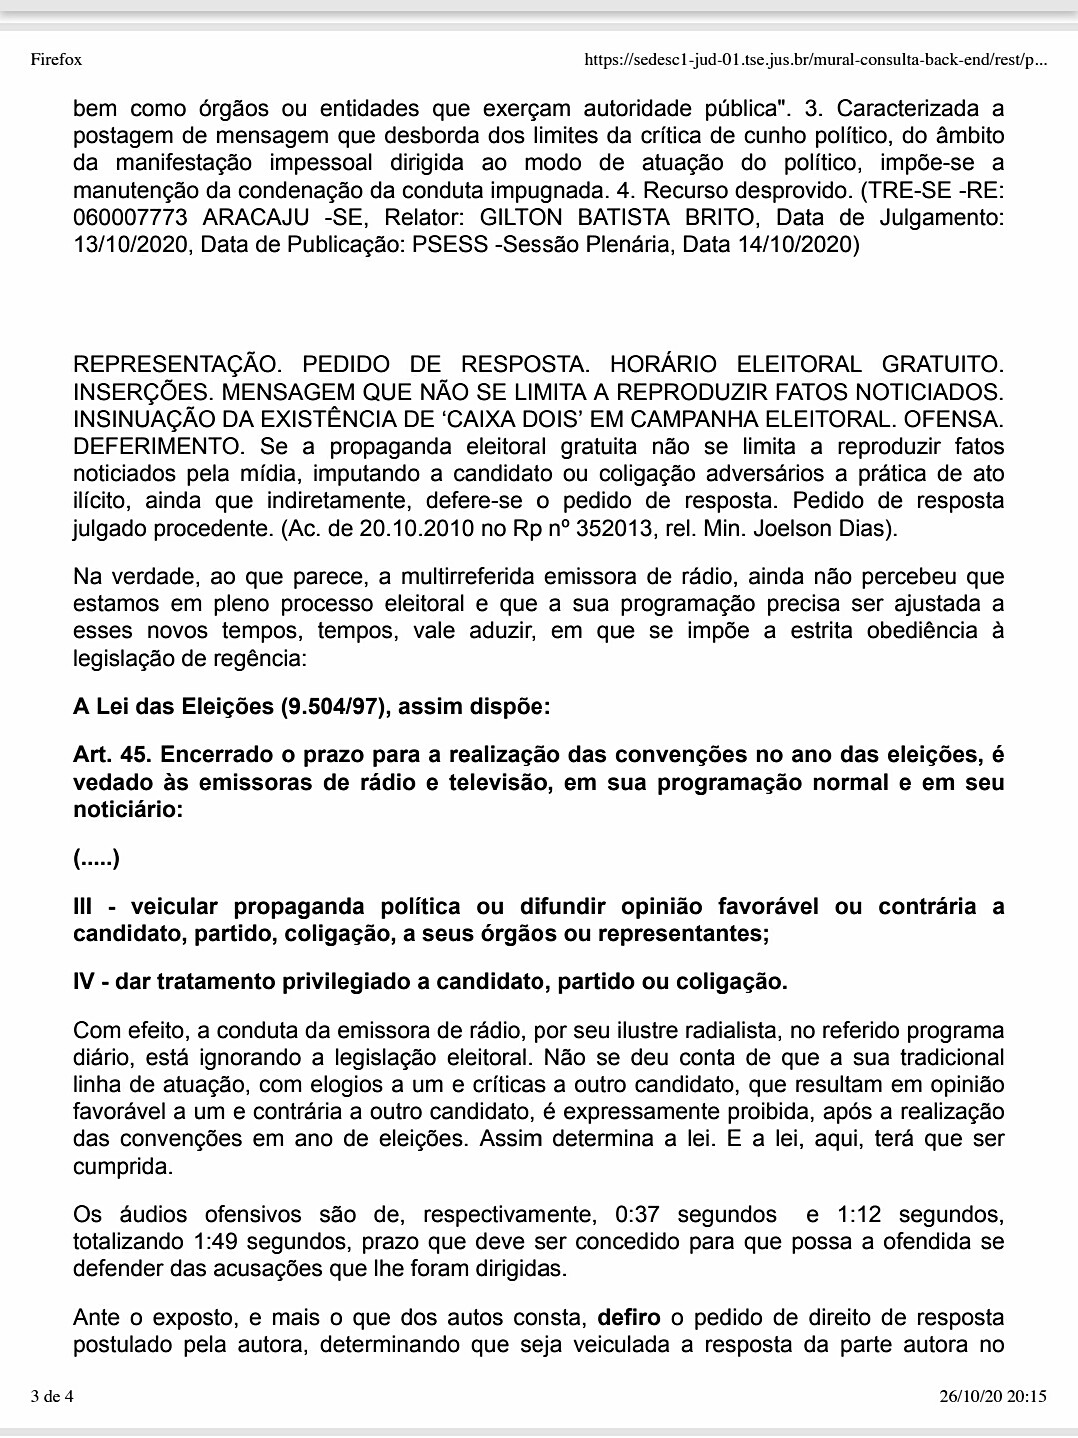 Justiça concede direito de resposta a Cordélia (DEM) no programa J. Bastos Repórter 8